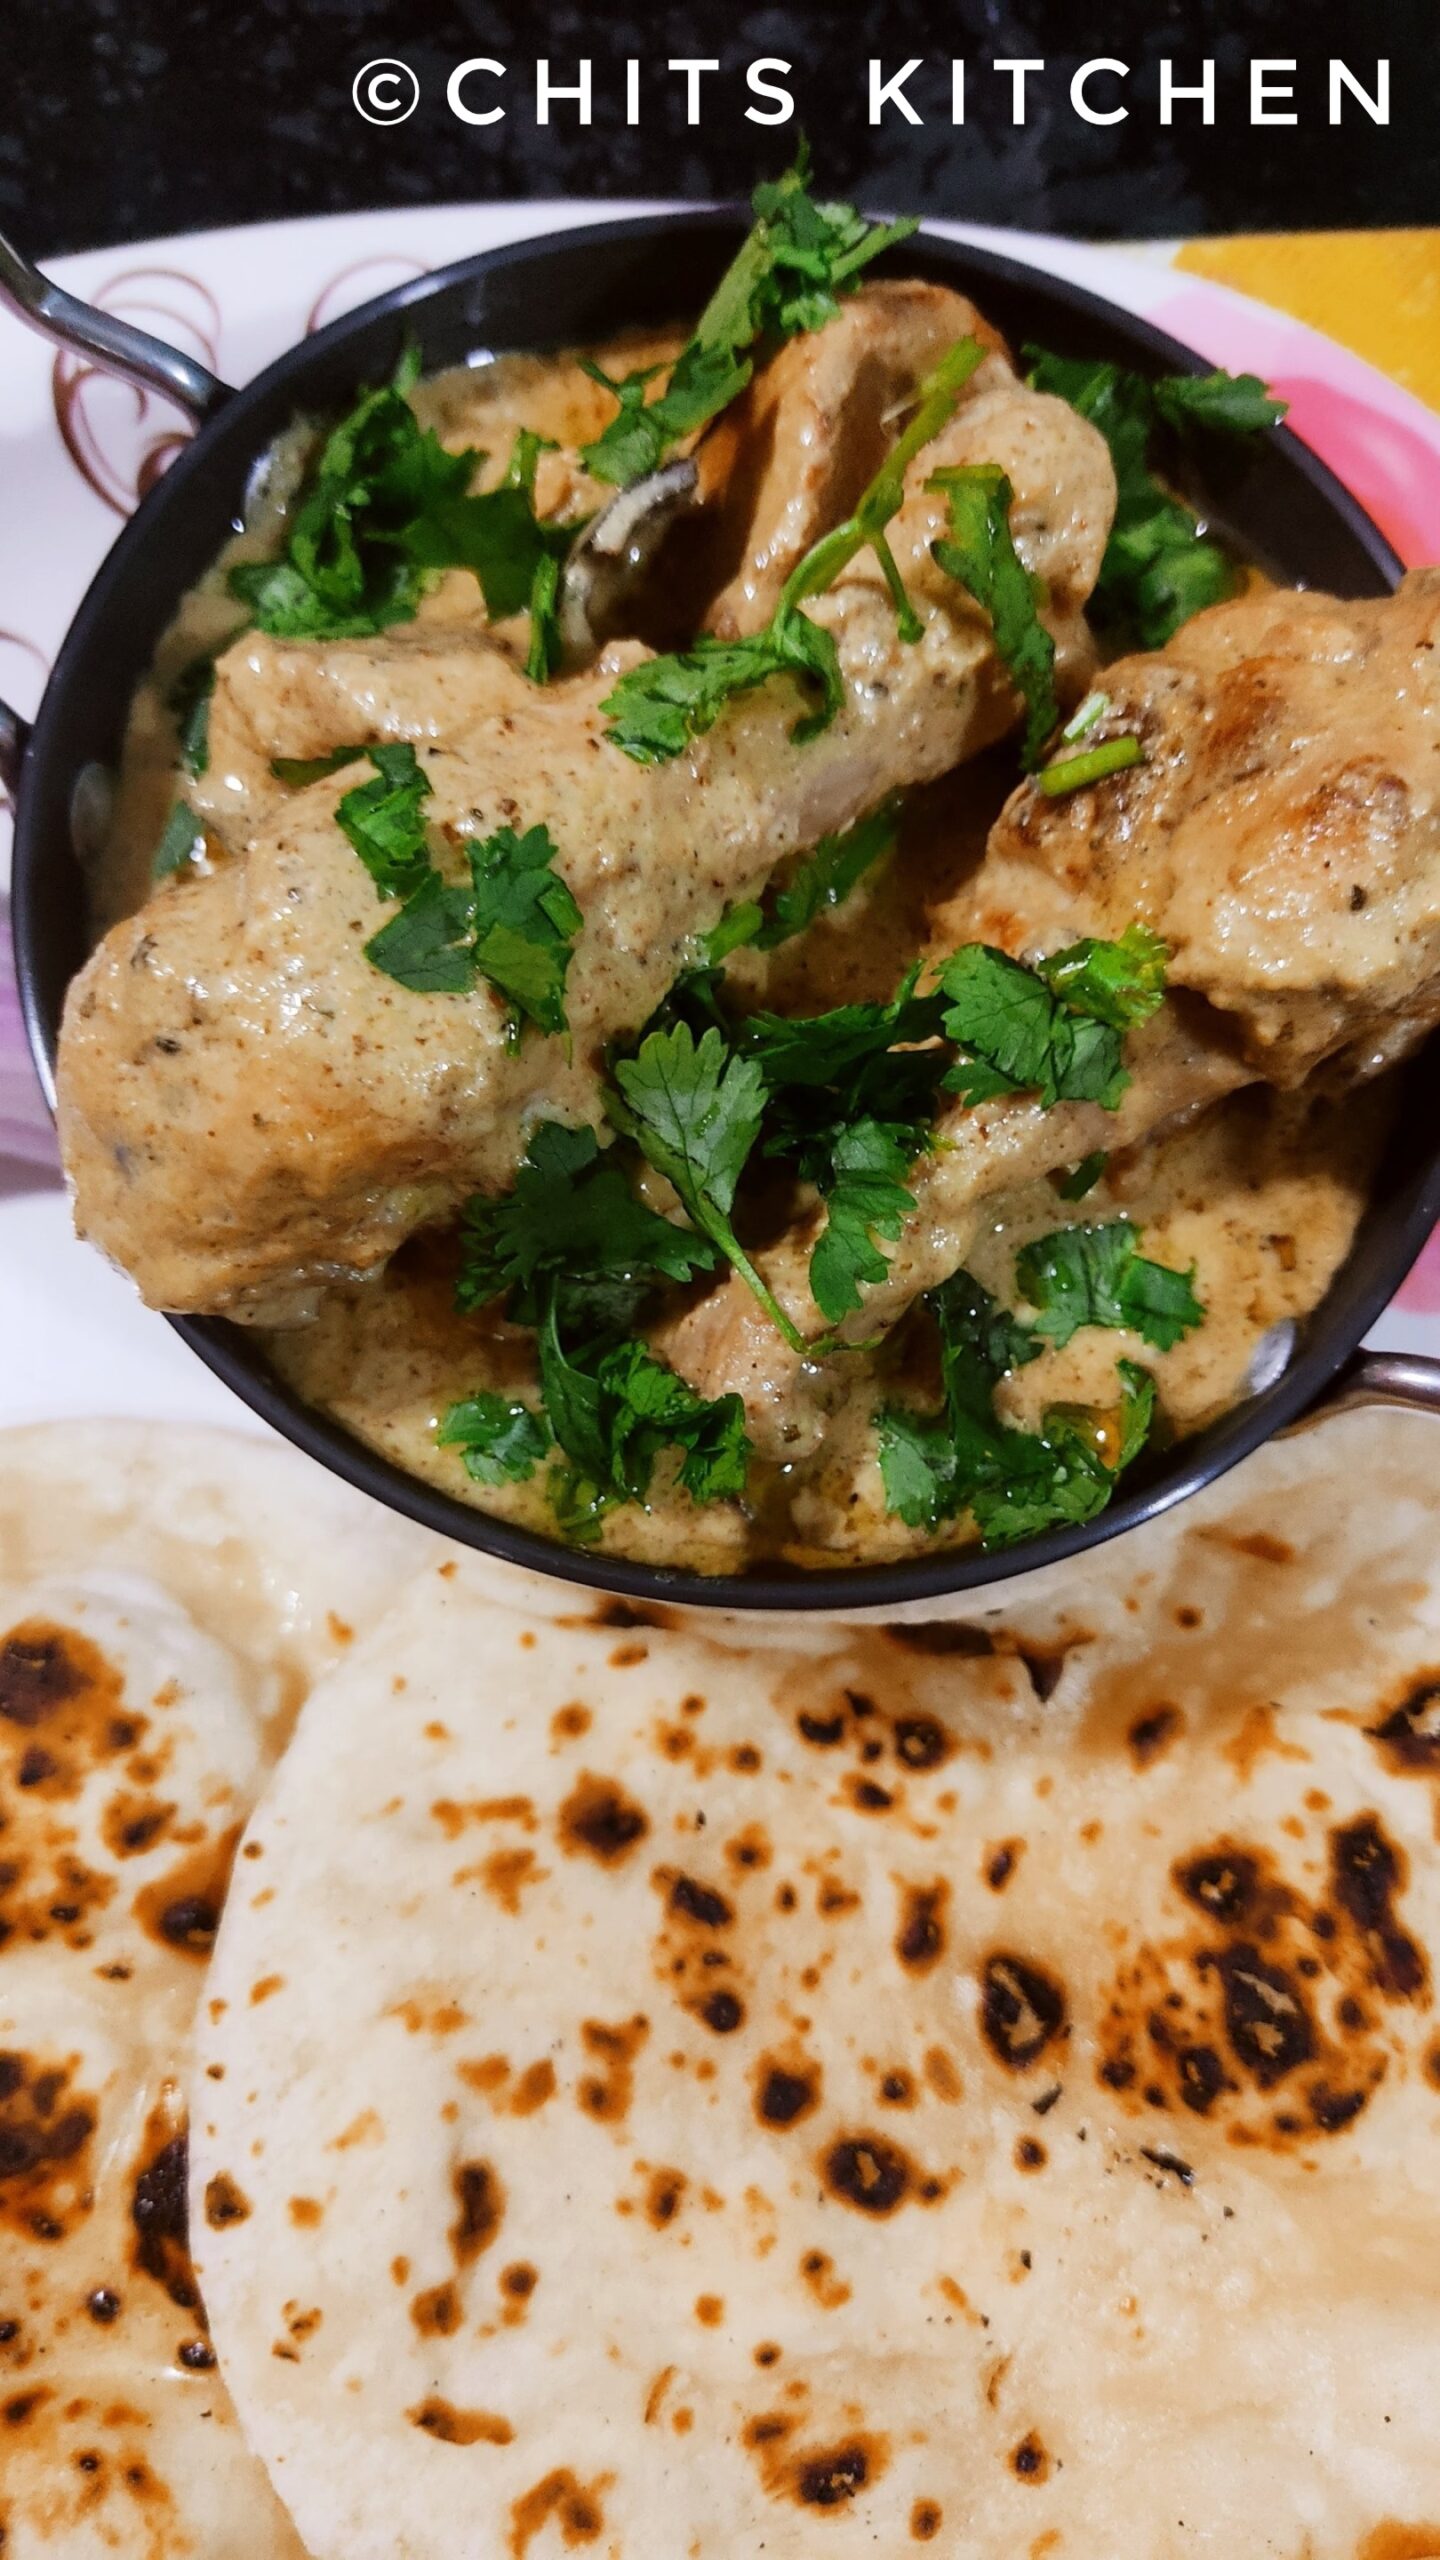 Chicken Afghani Gravy/Restaurant Style Afghani Chicken